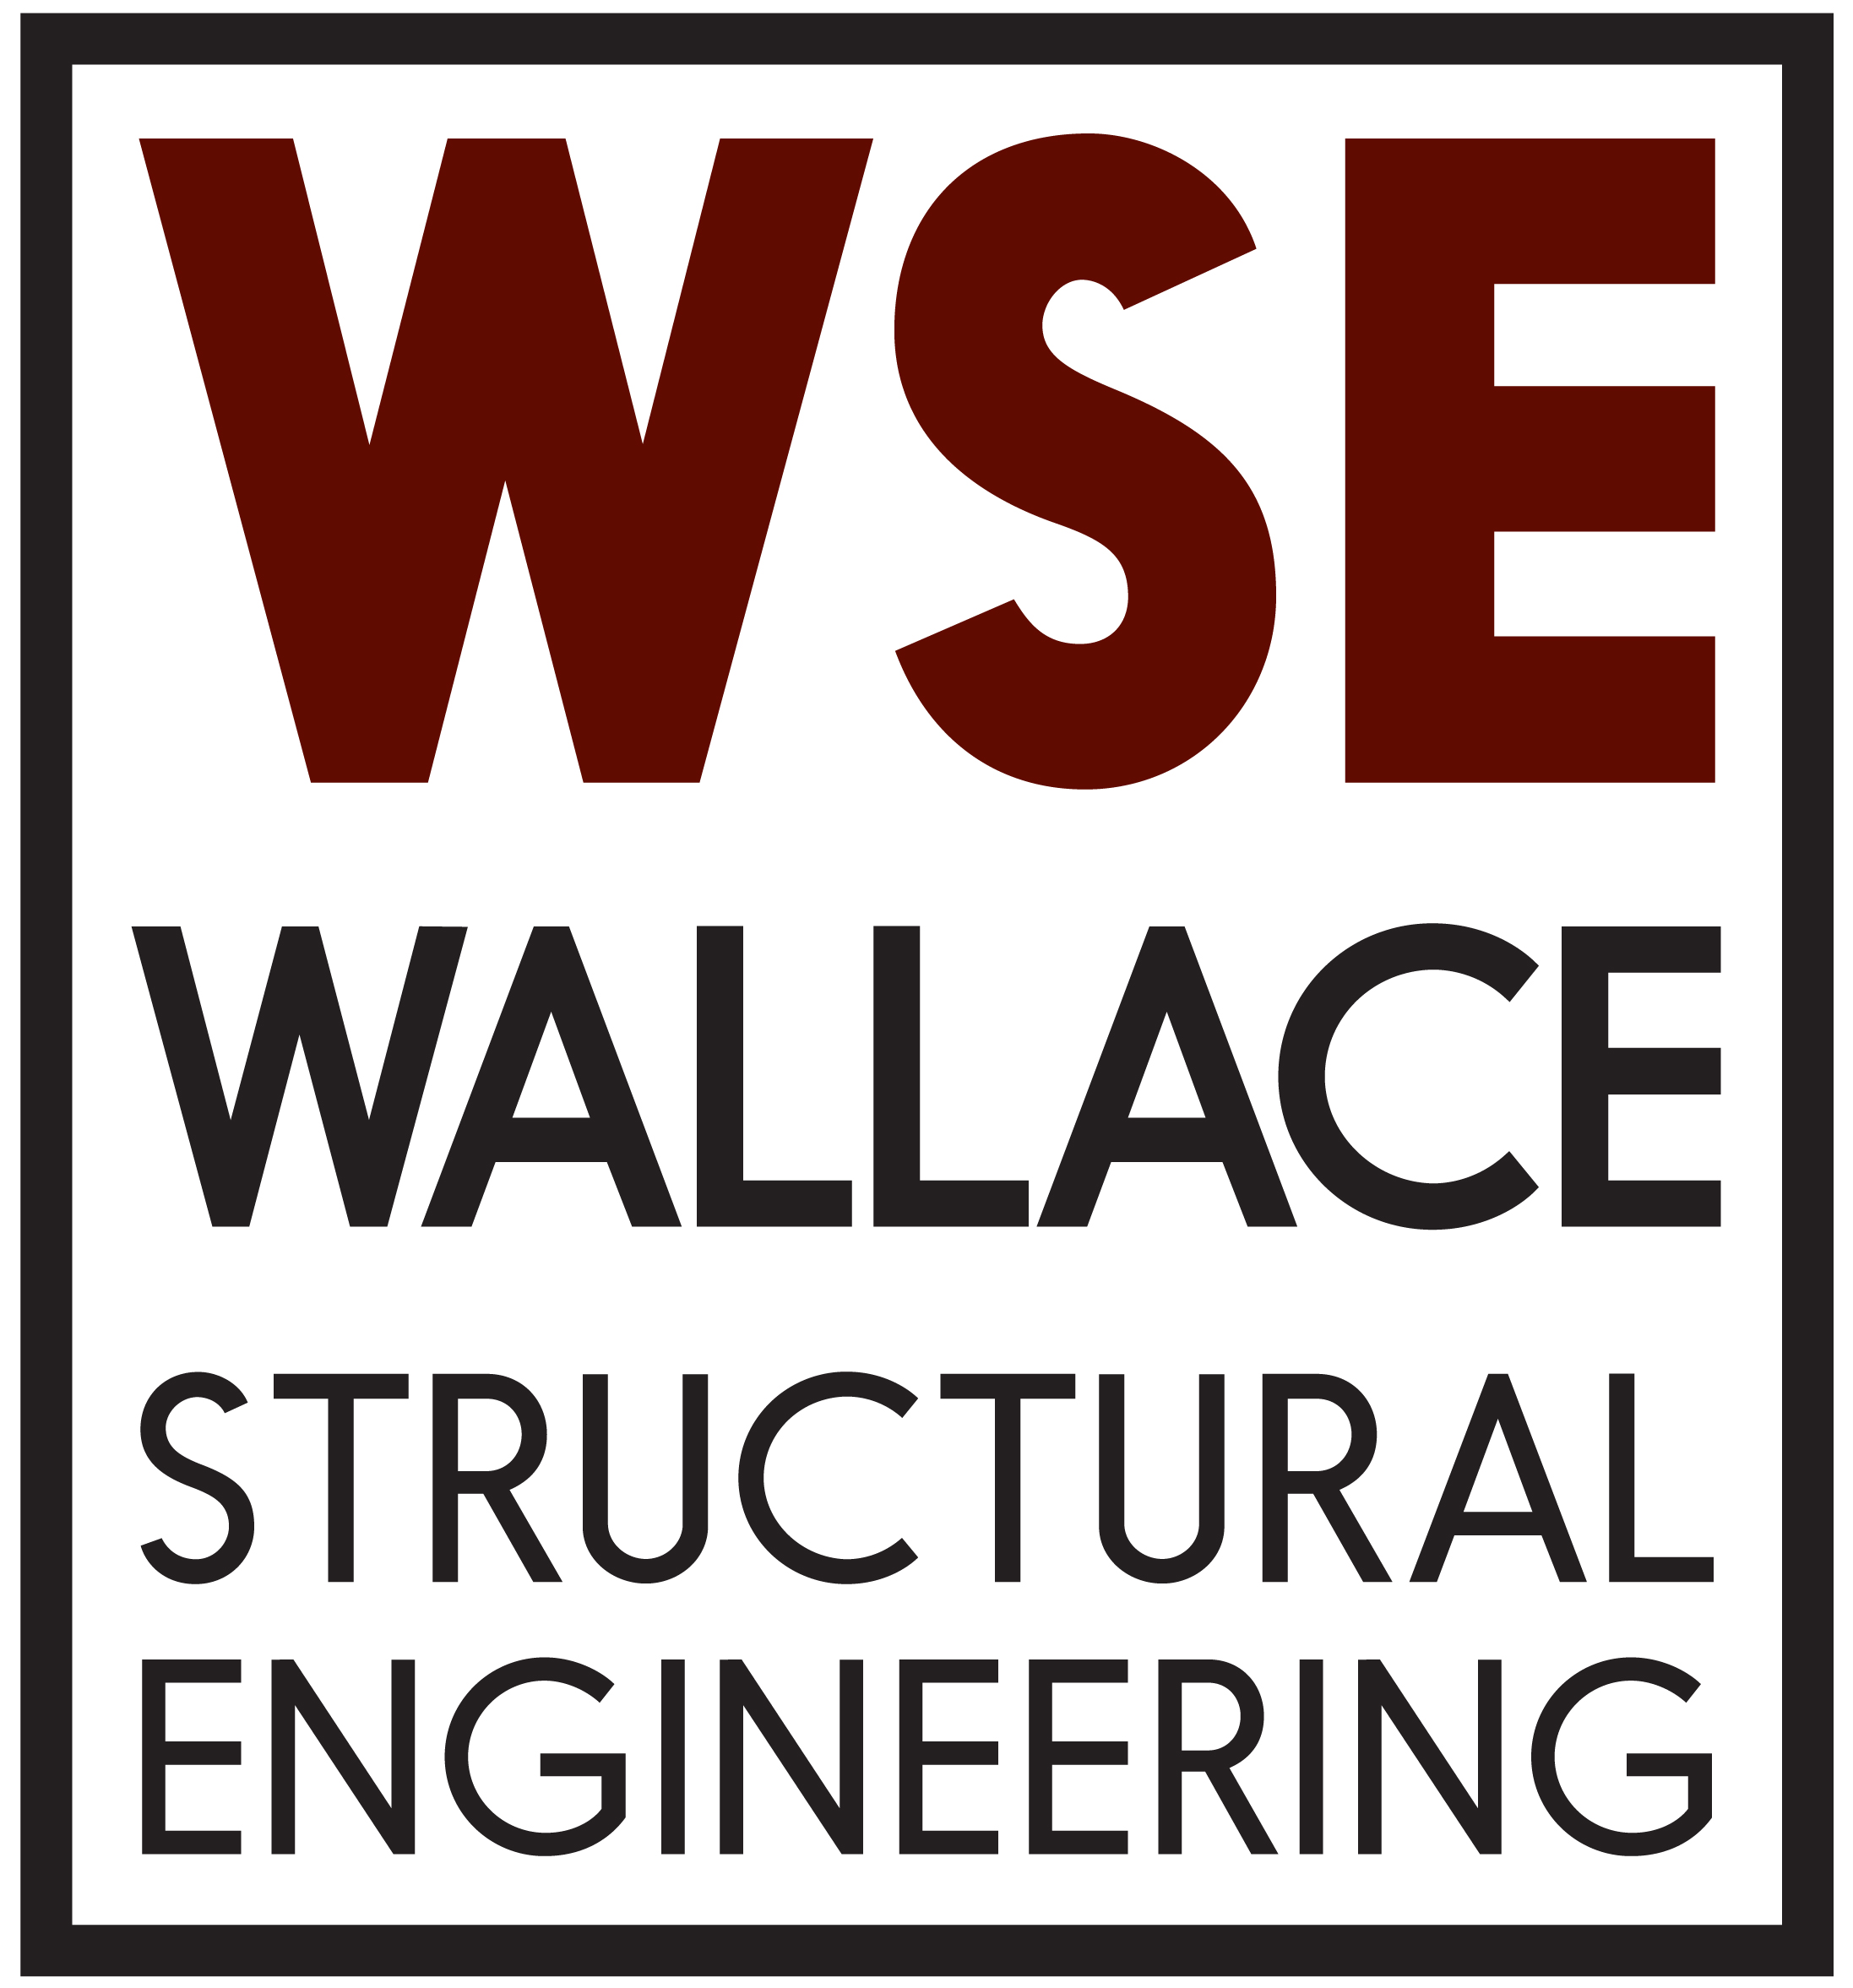 Wallace Engineering